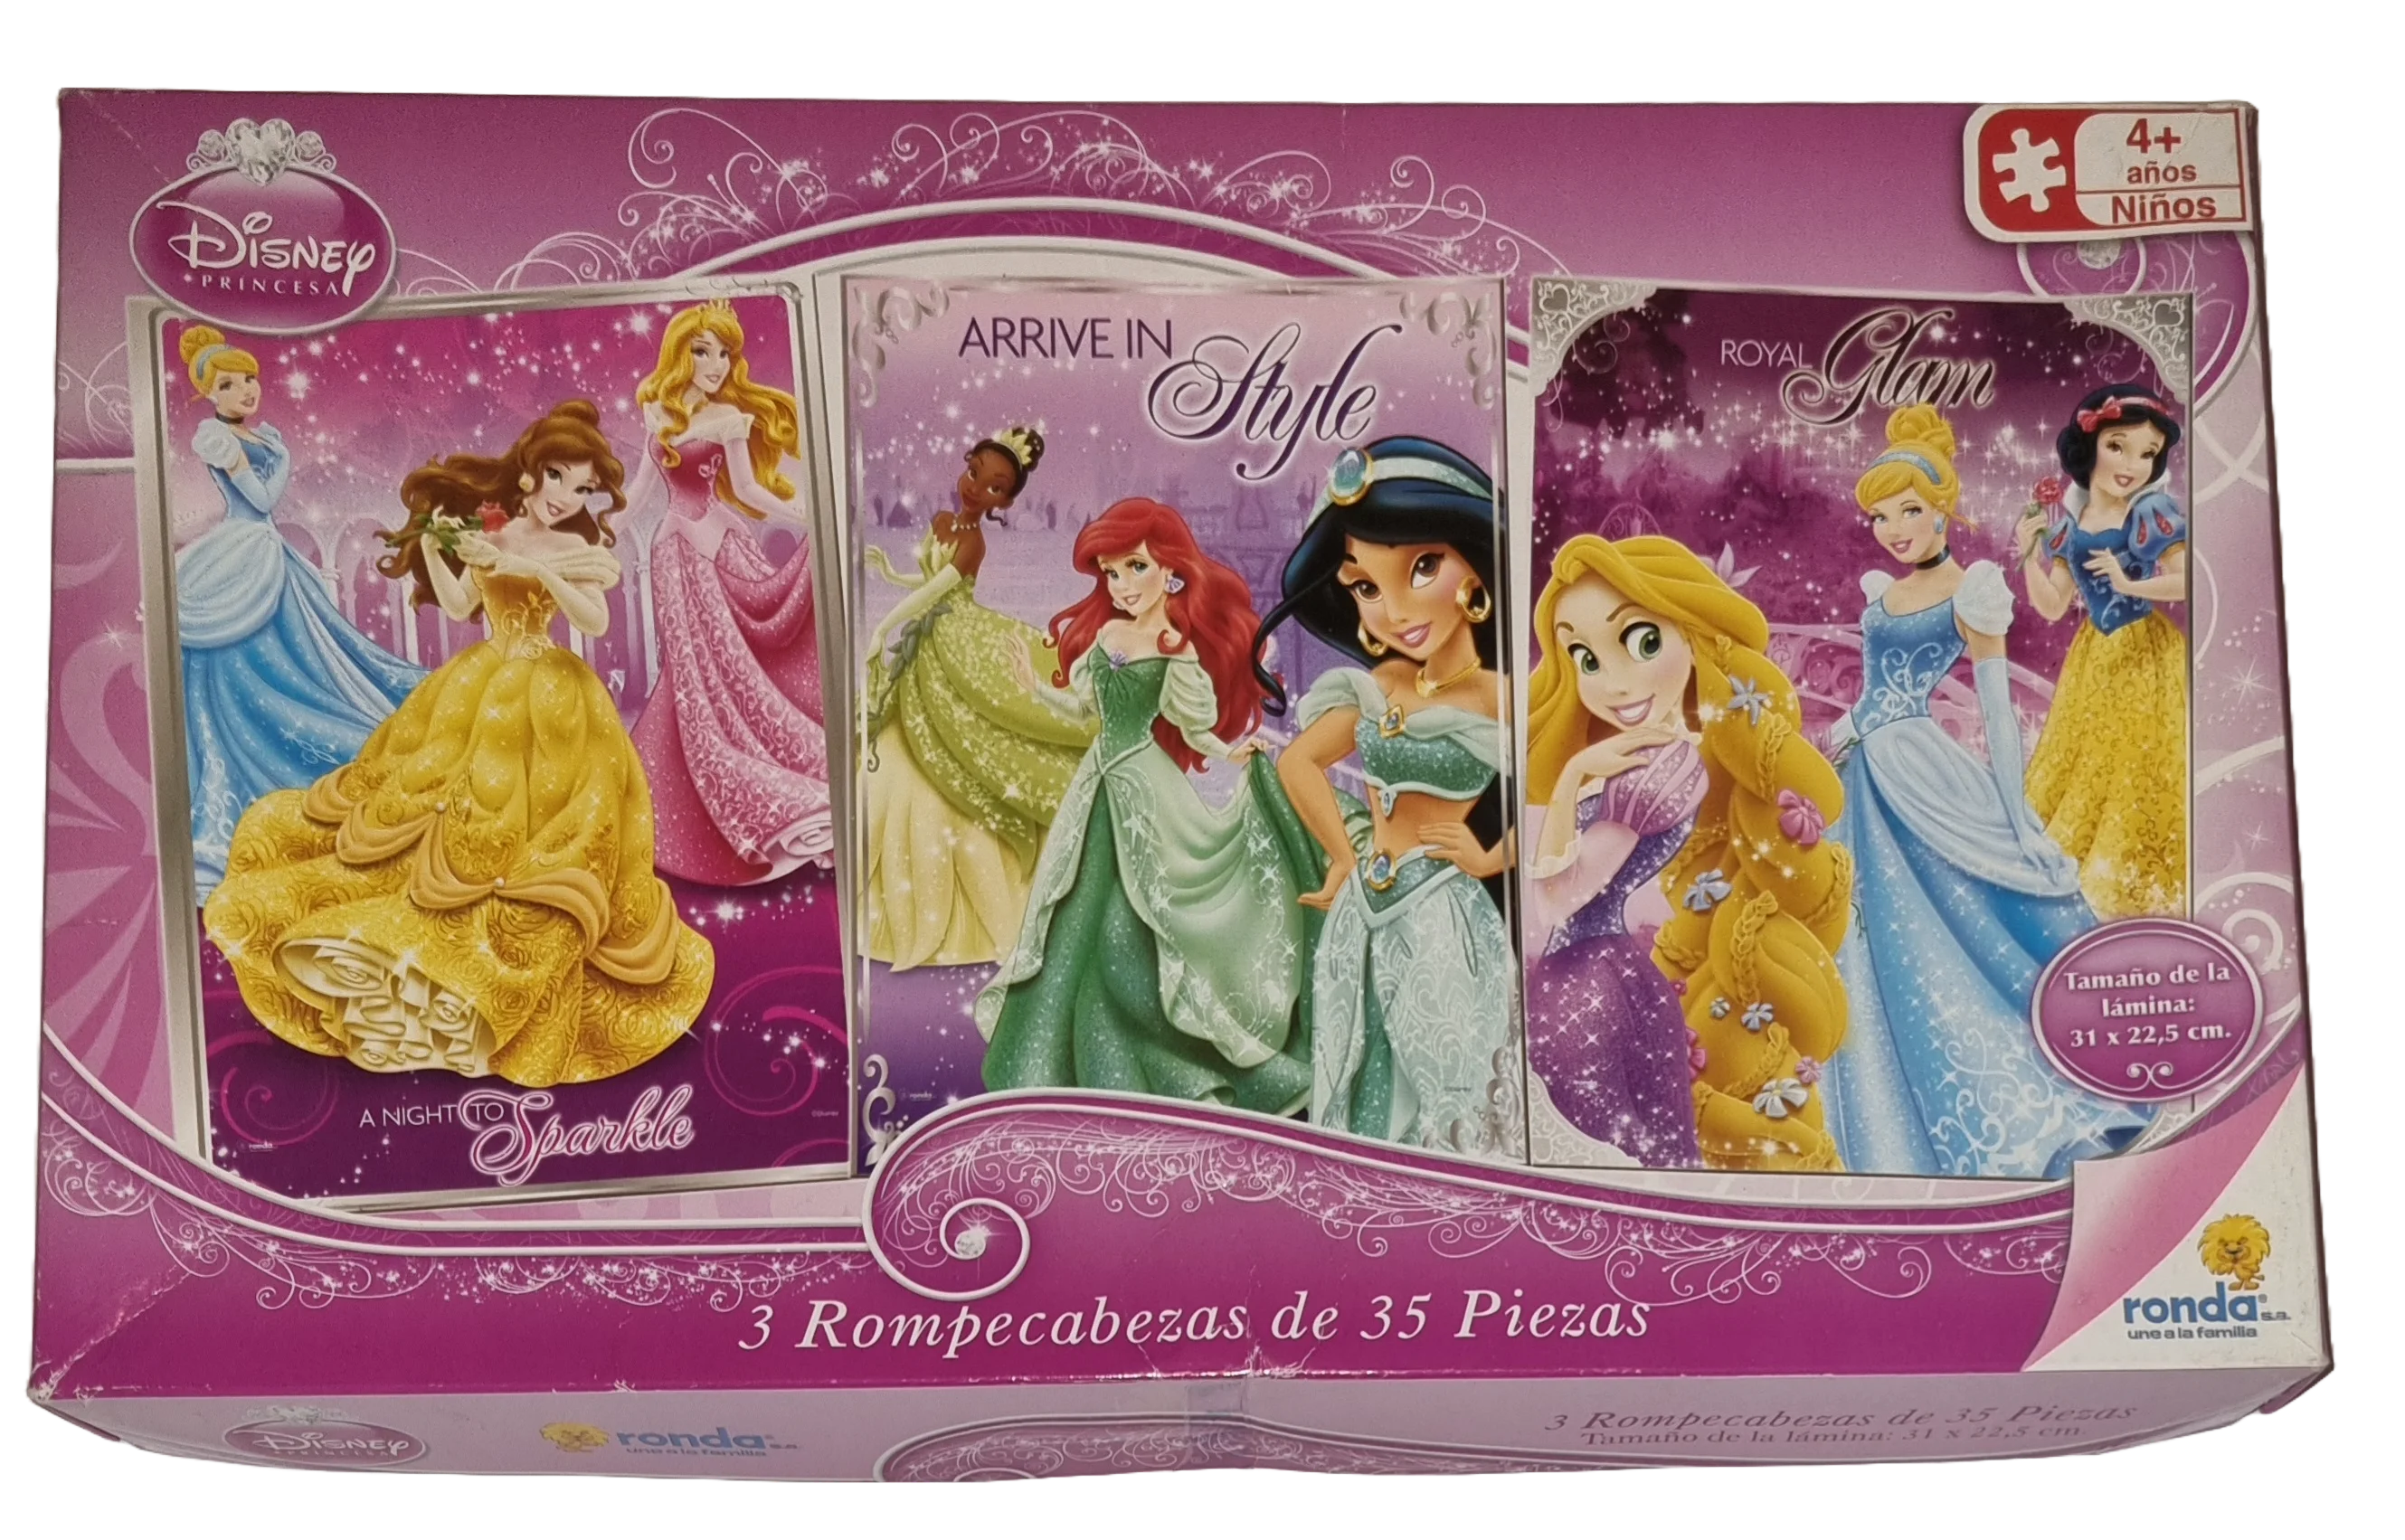 Disney Princesa 3 Rompecabezas de 35 Piezas